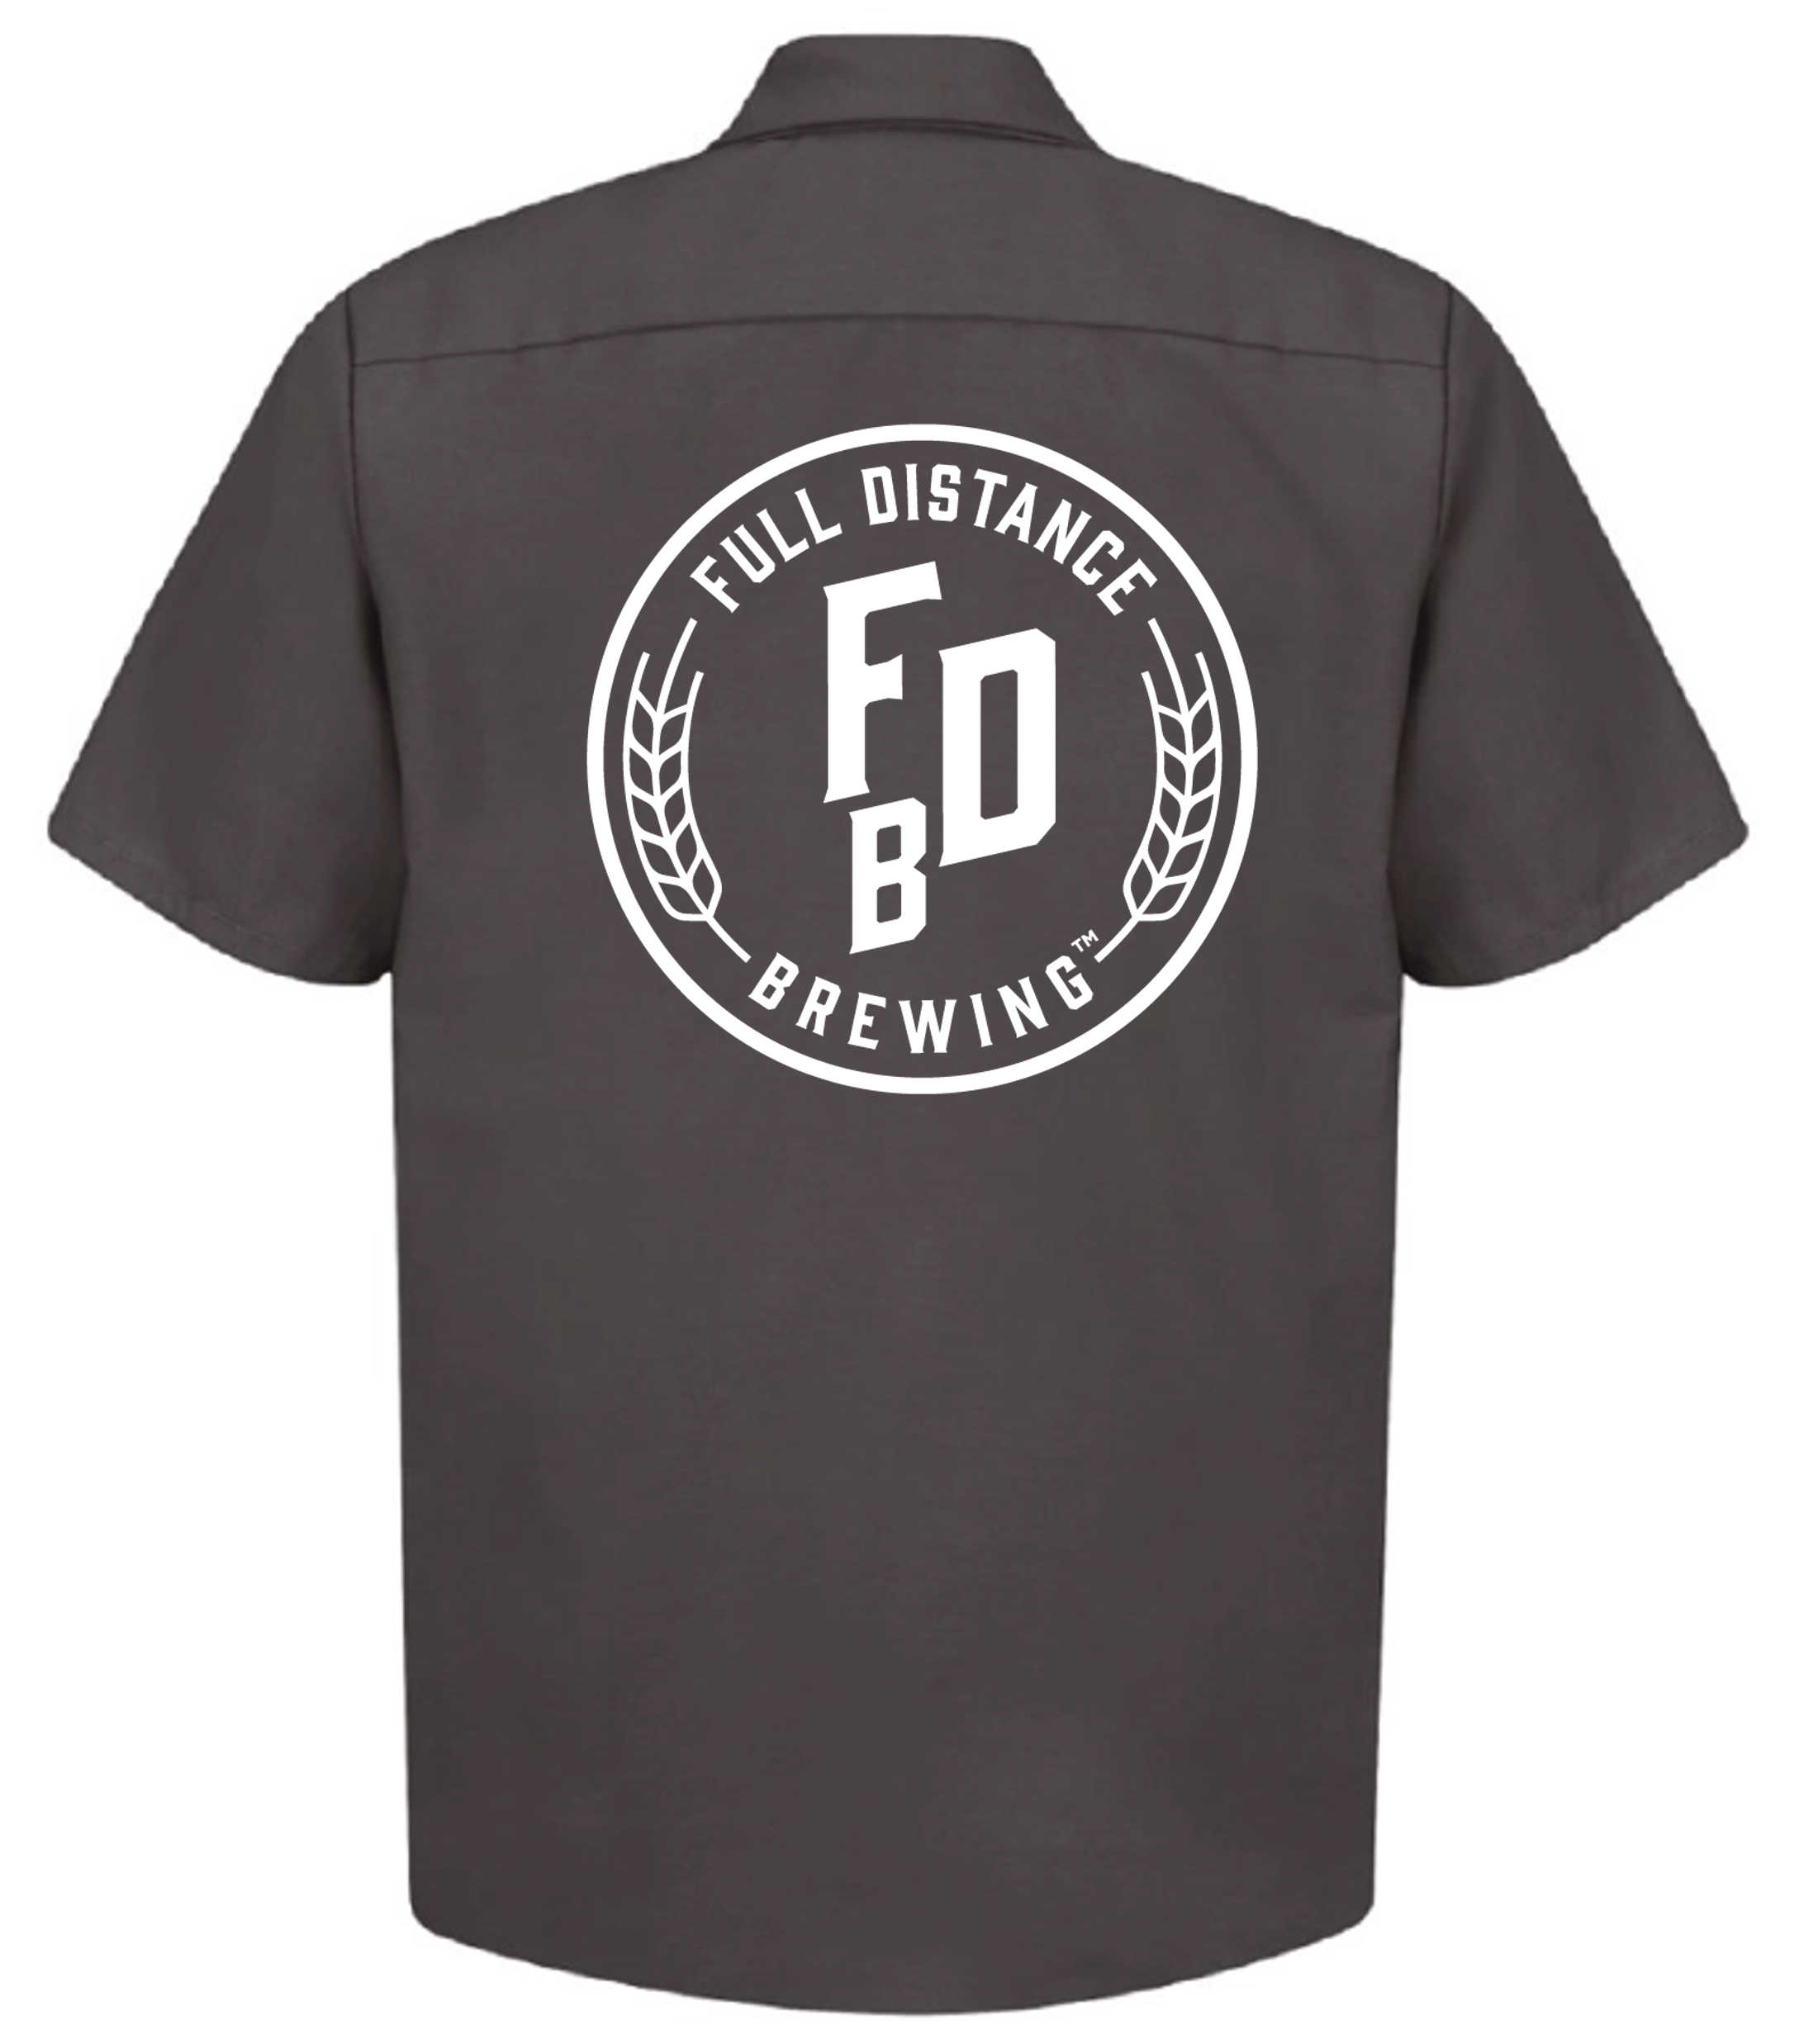 Brewer's Shirt  Full Distance Brewing